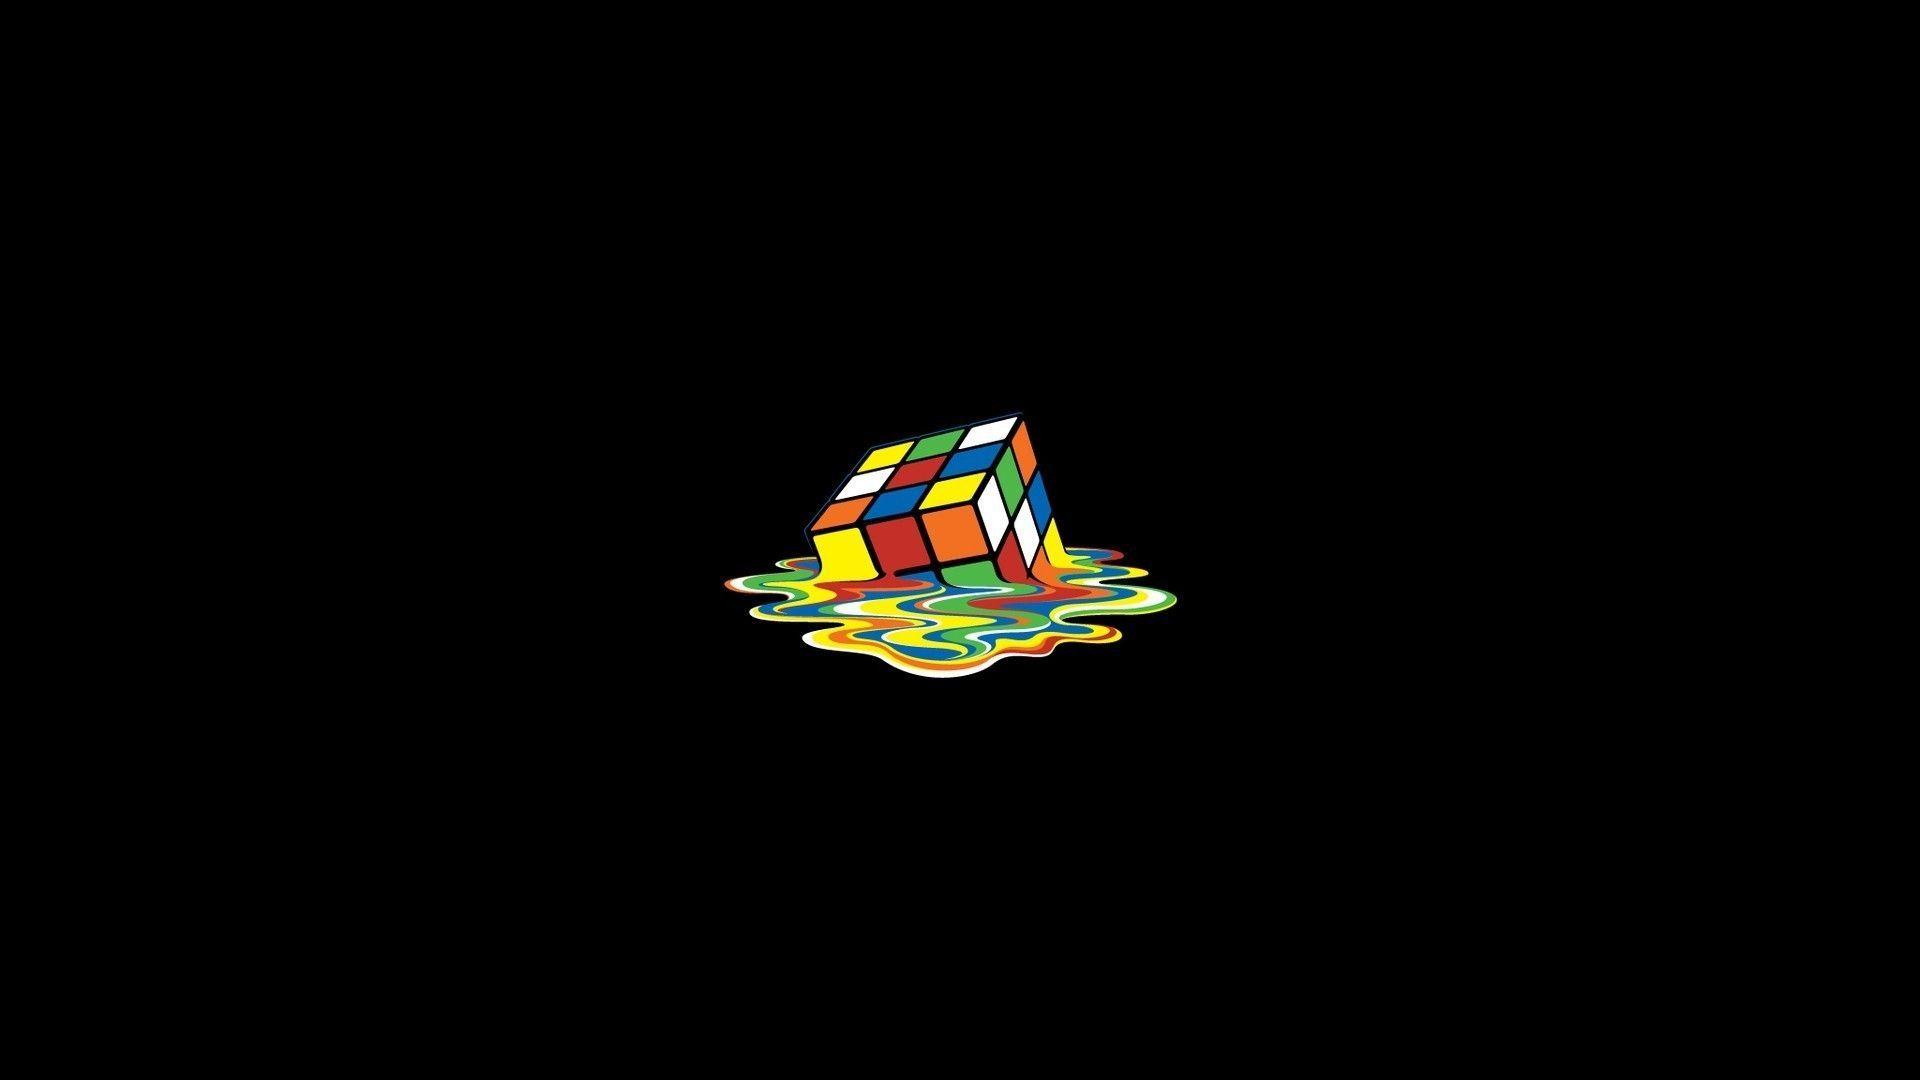 Cubo Rubik Wallpapers - Wallpaper Cave